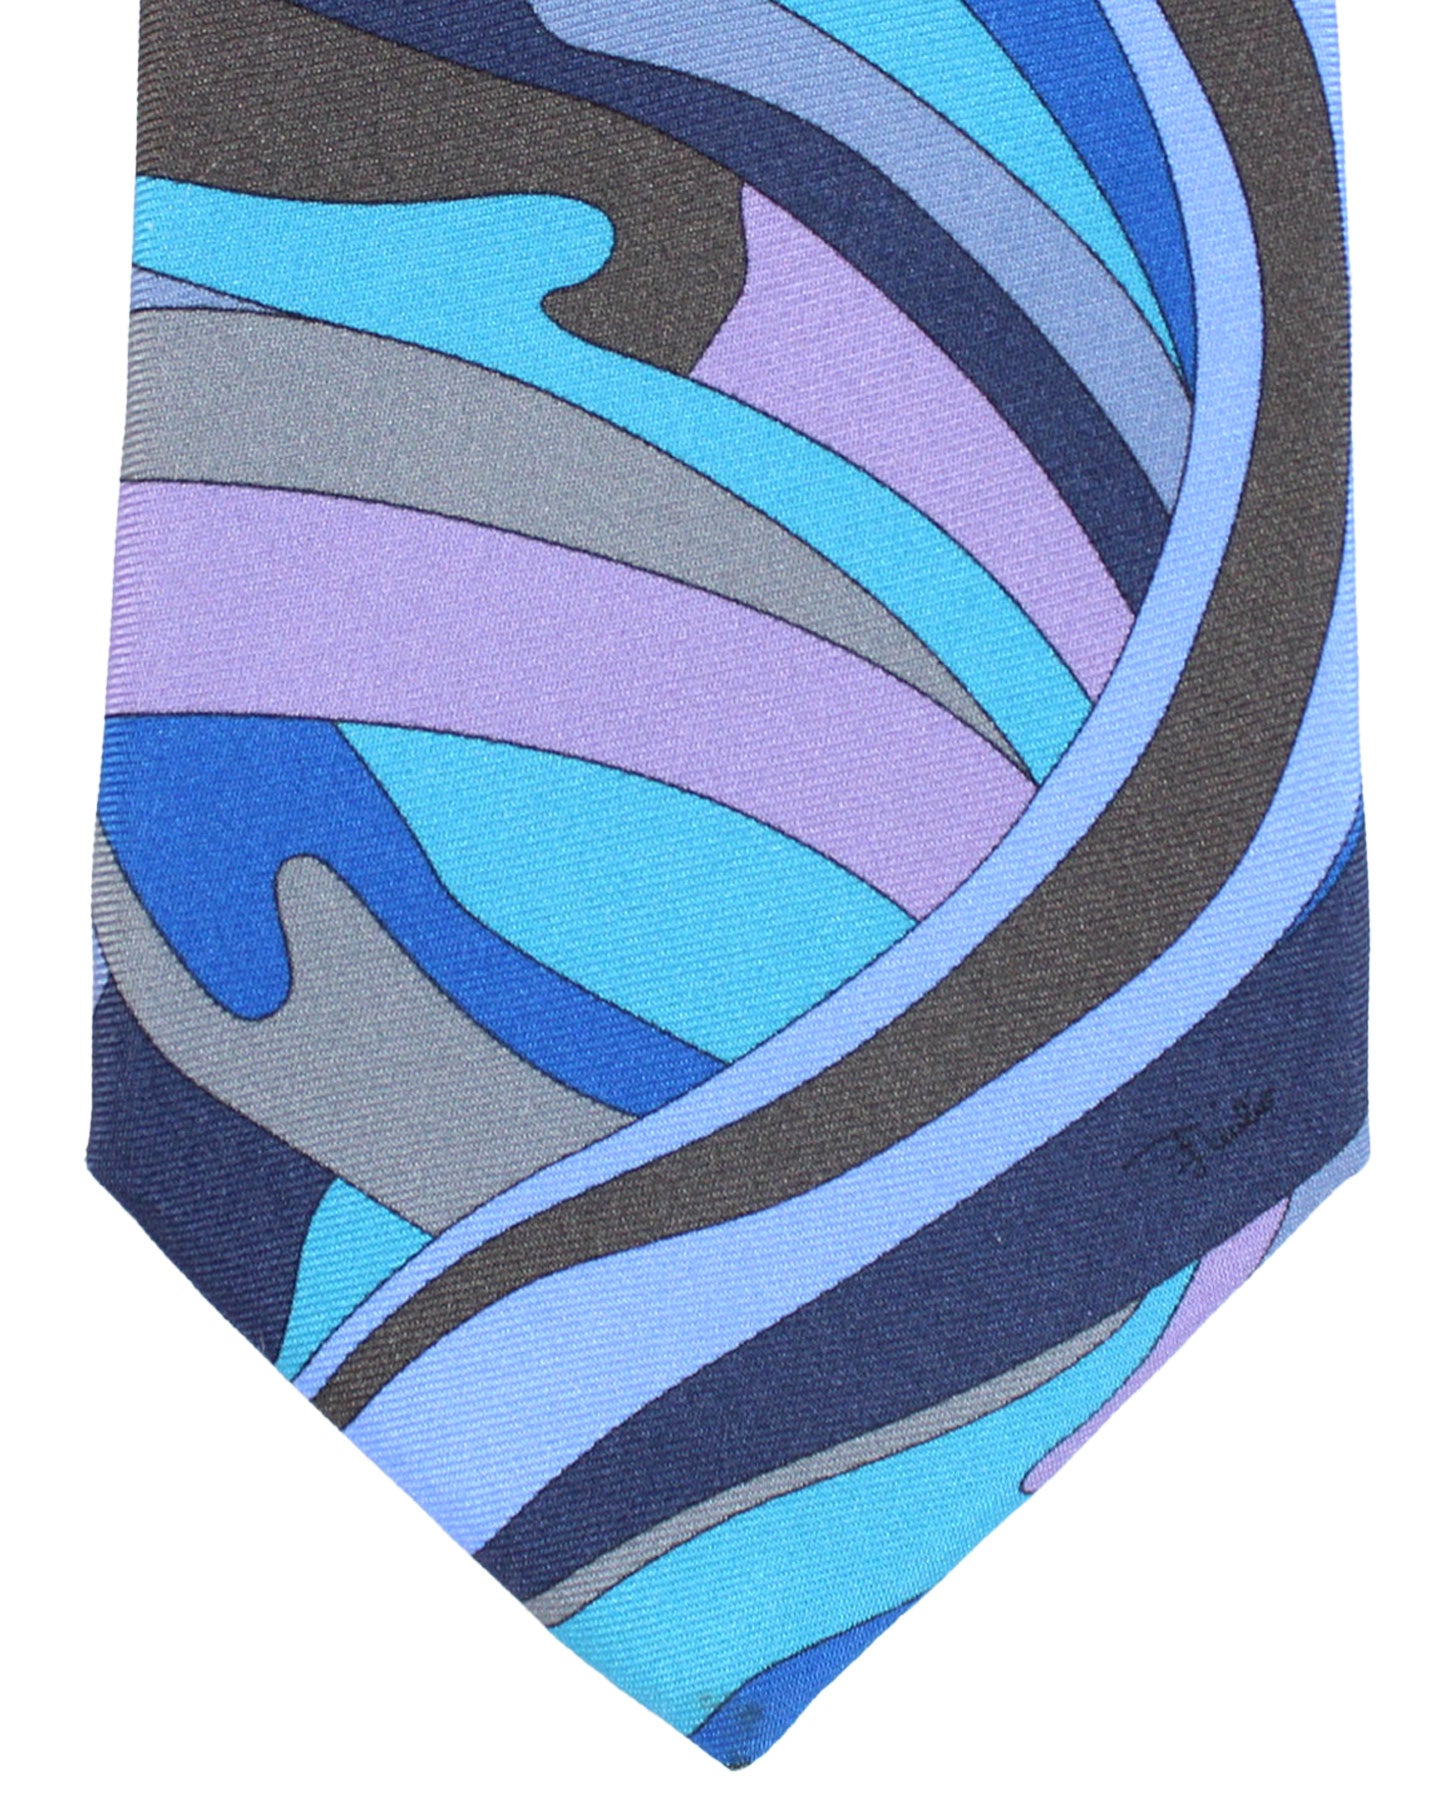 Emilio Pucci Silk Tie Signature Blue Gray Brown Lilac Swirl Design